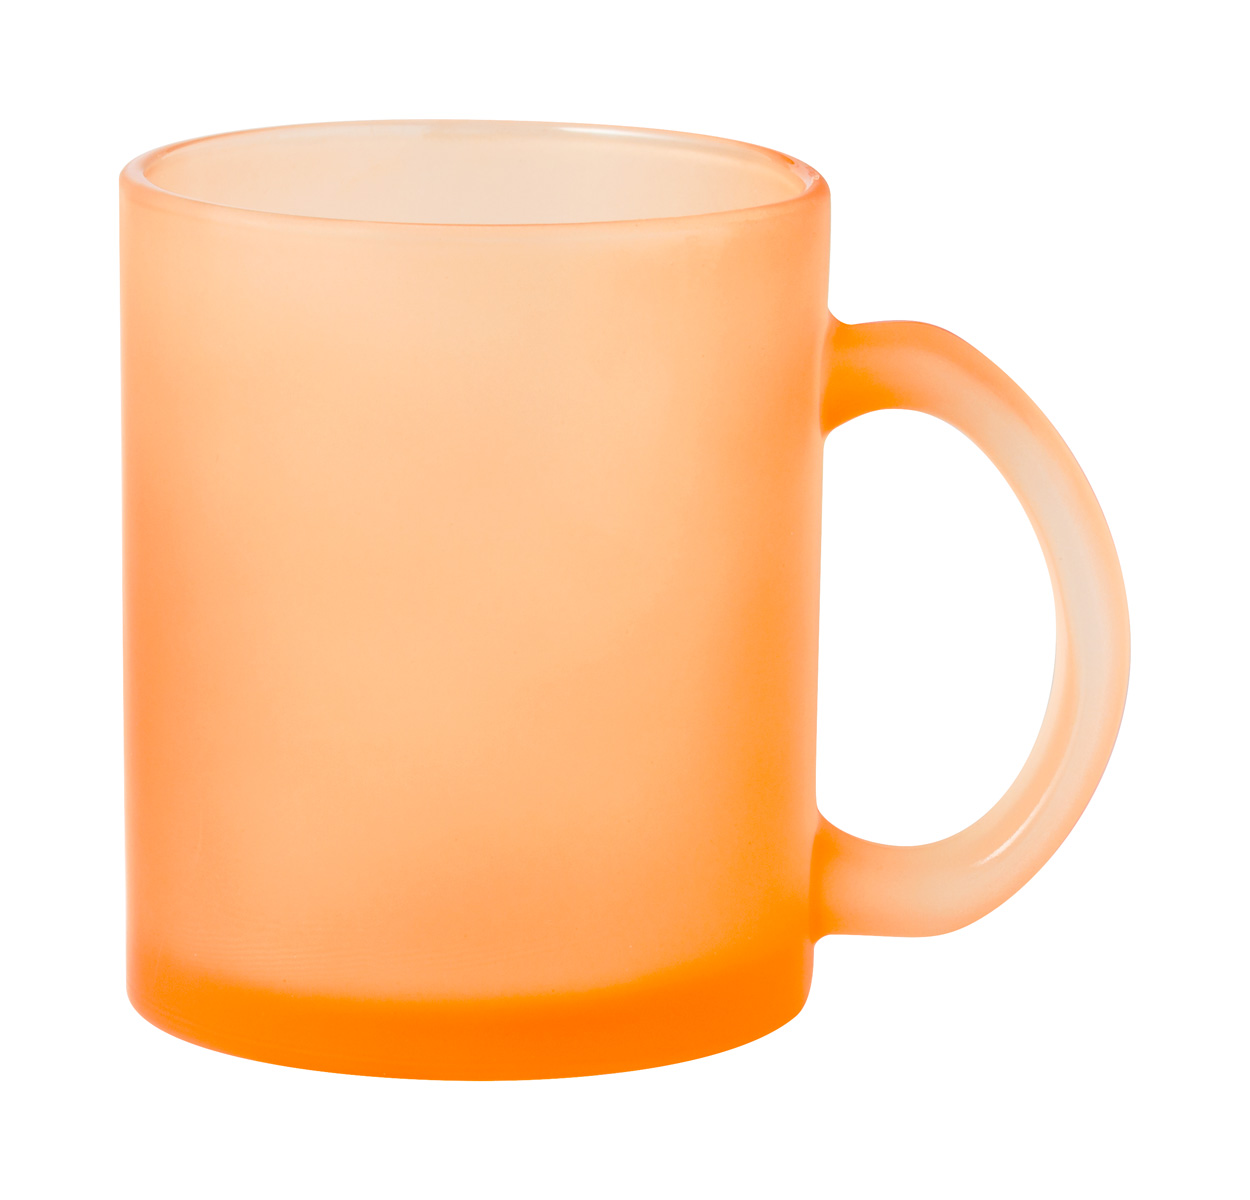 Cervan mug for sublimation - orange